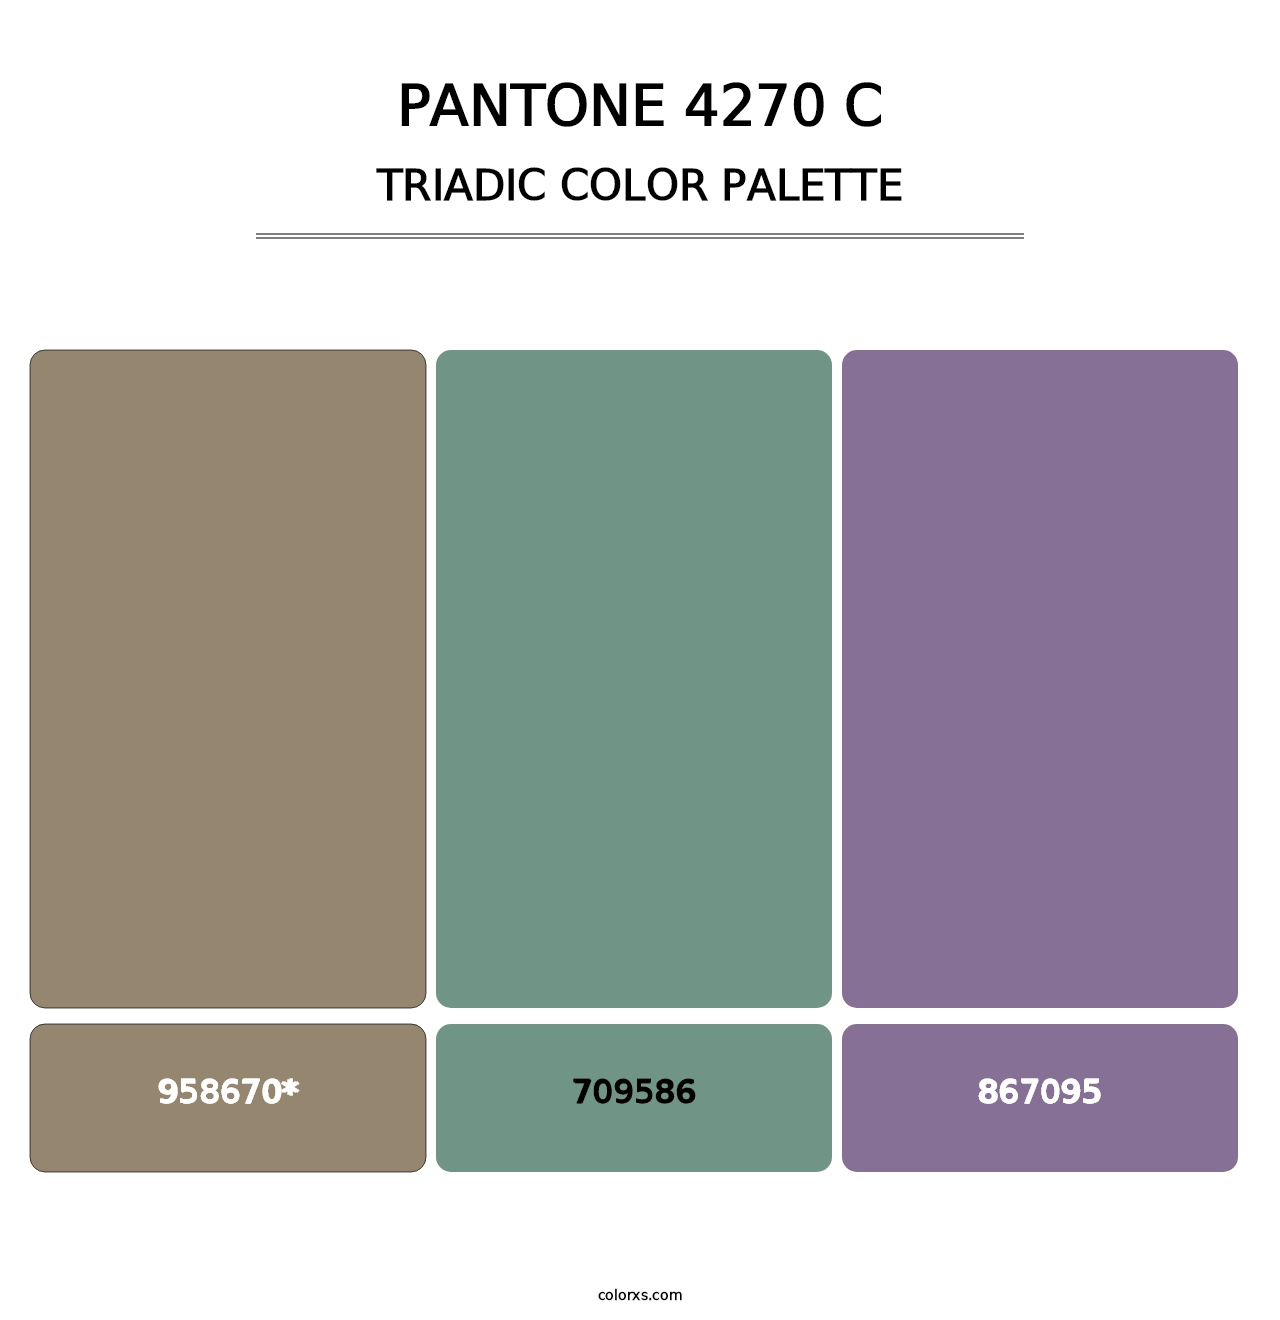 PANTONE 4270 C - Triadic Color Palette